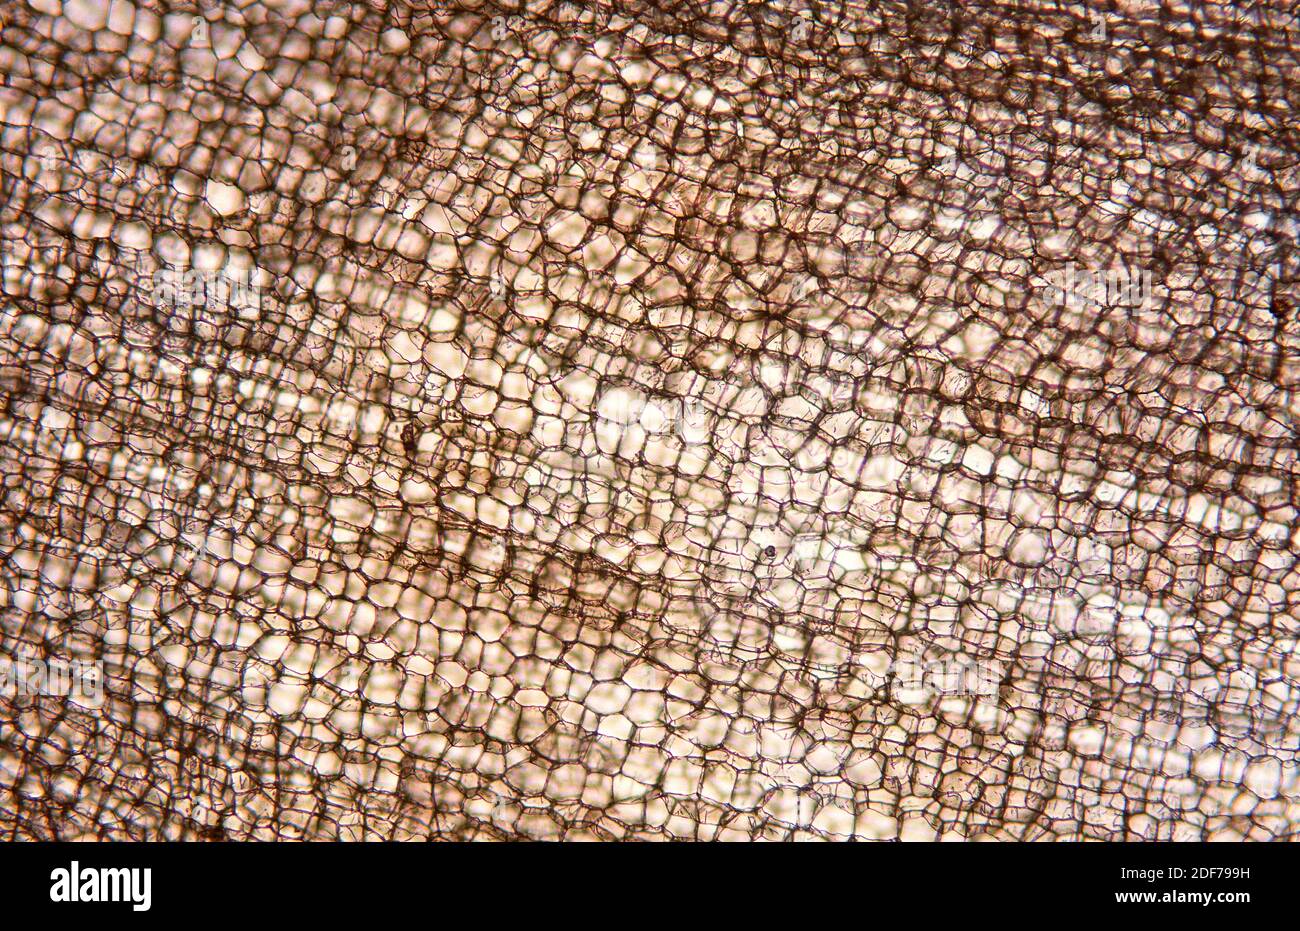 La capa de corcho o flema es un tejido vegetal protector compuesto por células muertas cubiertas de suberina. Micrografía de corteza de Quercus suber. Foto de stock